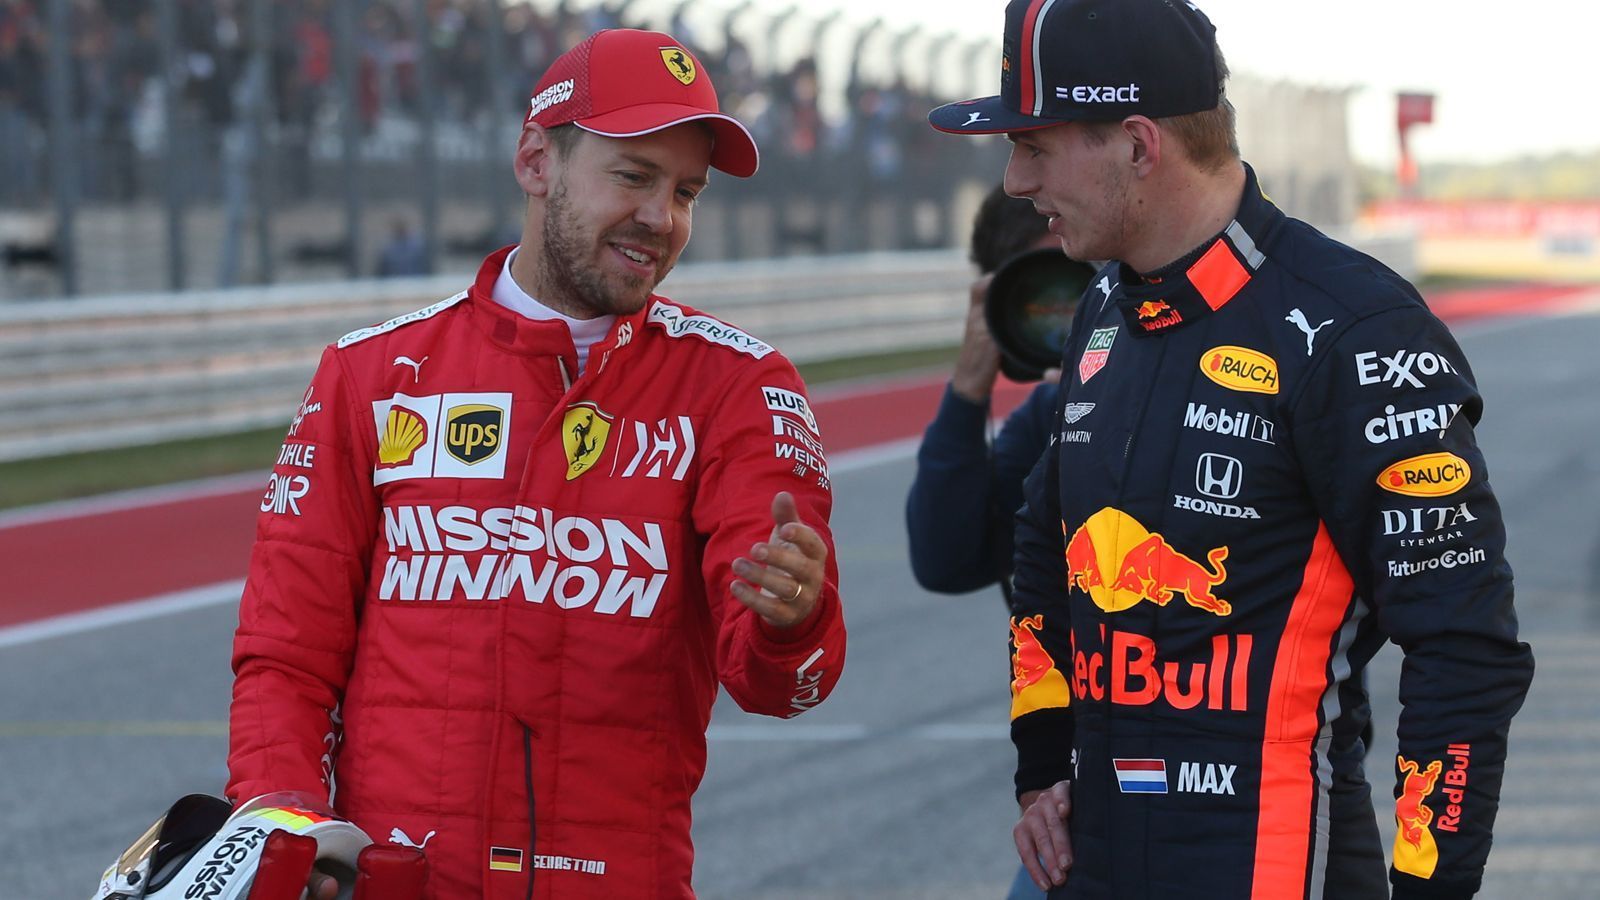 
                <strong>Verstappen kein Problem</strong><br>
                Er hätte auch kein Problem damit, dass er mit Max Verstappen einen kommenden Weltmeister als Teamkollegen hat. Trotz der eher ernüchternden Erfahrung mit Charles Leclerc bei Ferrari stellt Vettel klar: "Wenn du gewinnen willst, dann musst du es mit jedem aufnehmen." Umgekehrt hätte übrigens auch Verstappen kein Problem mit Vettel.
              